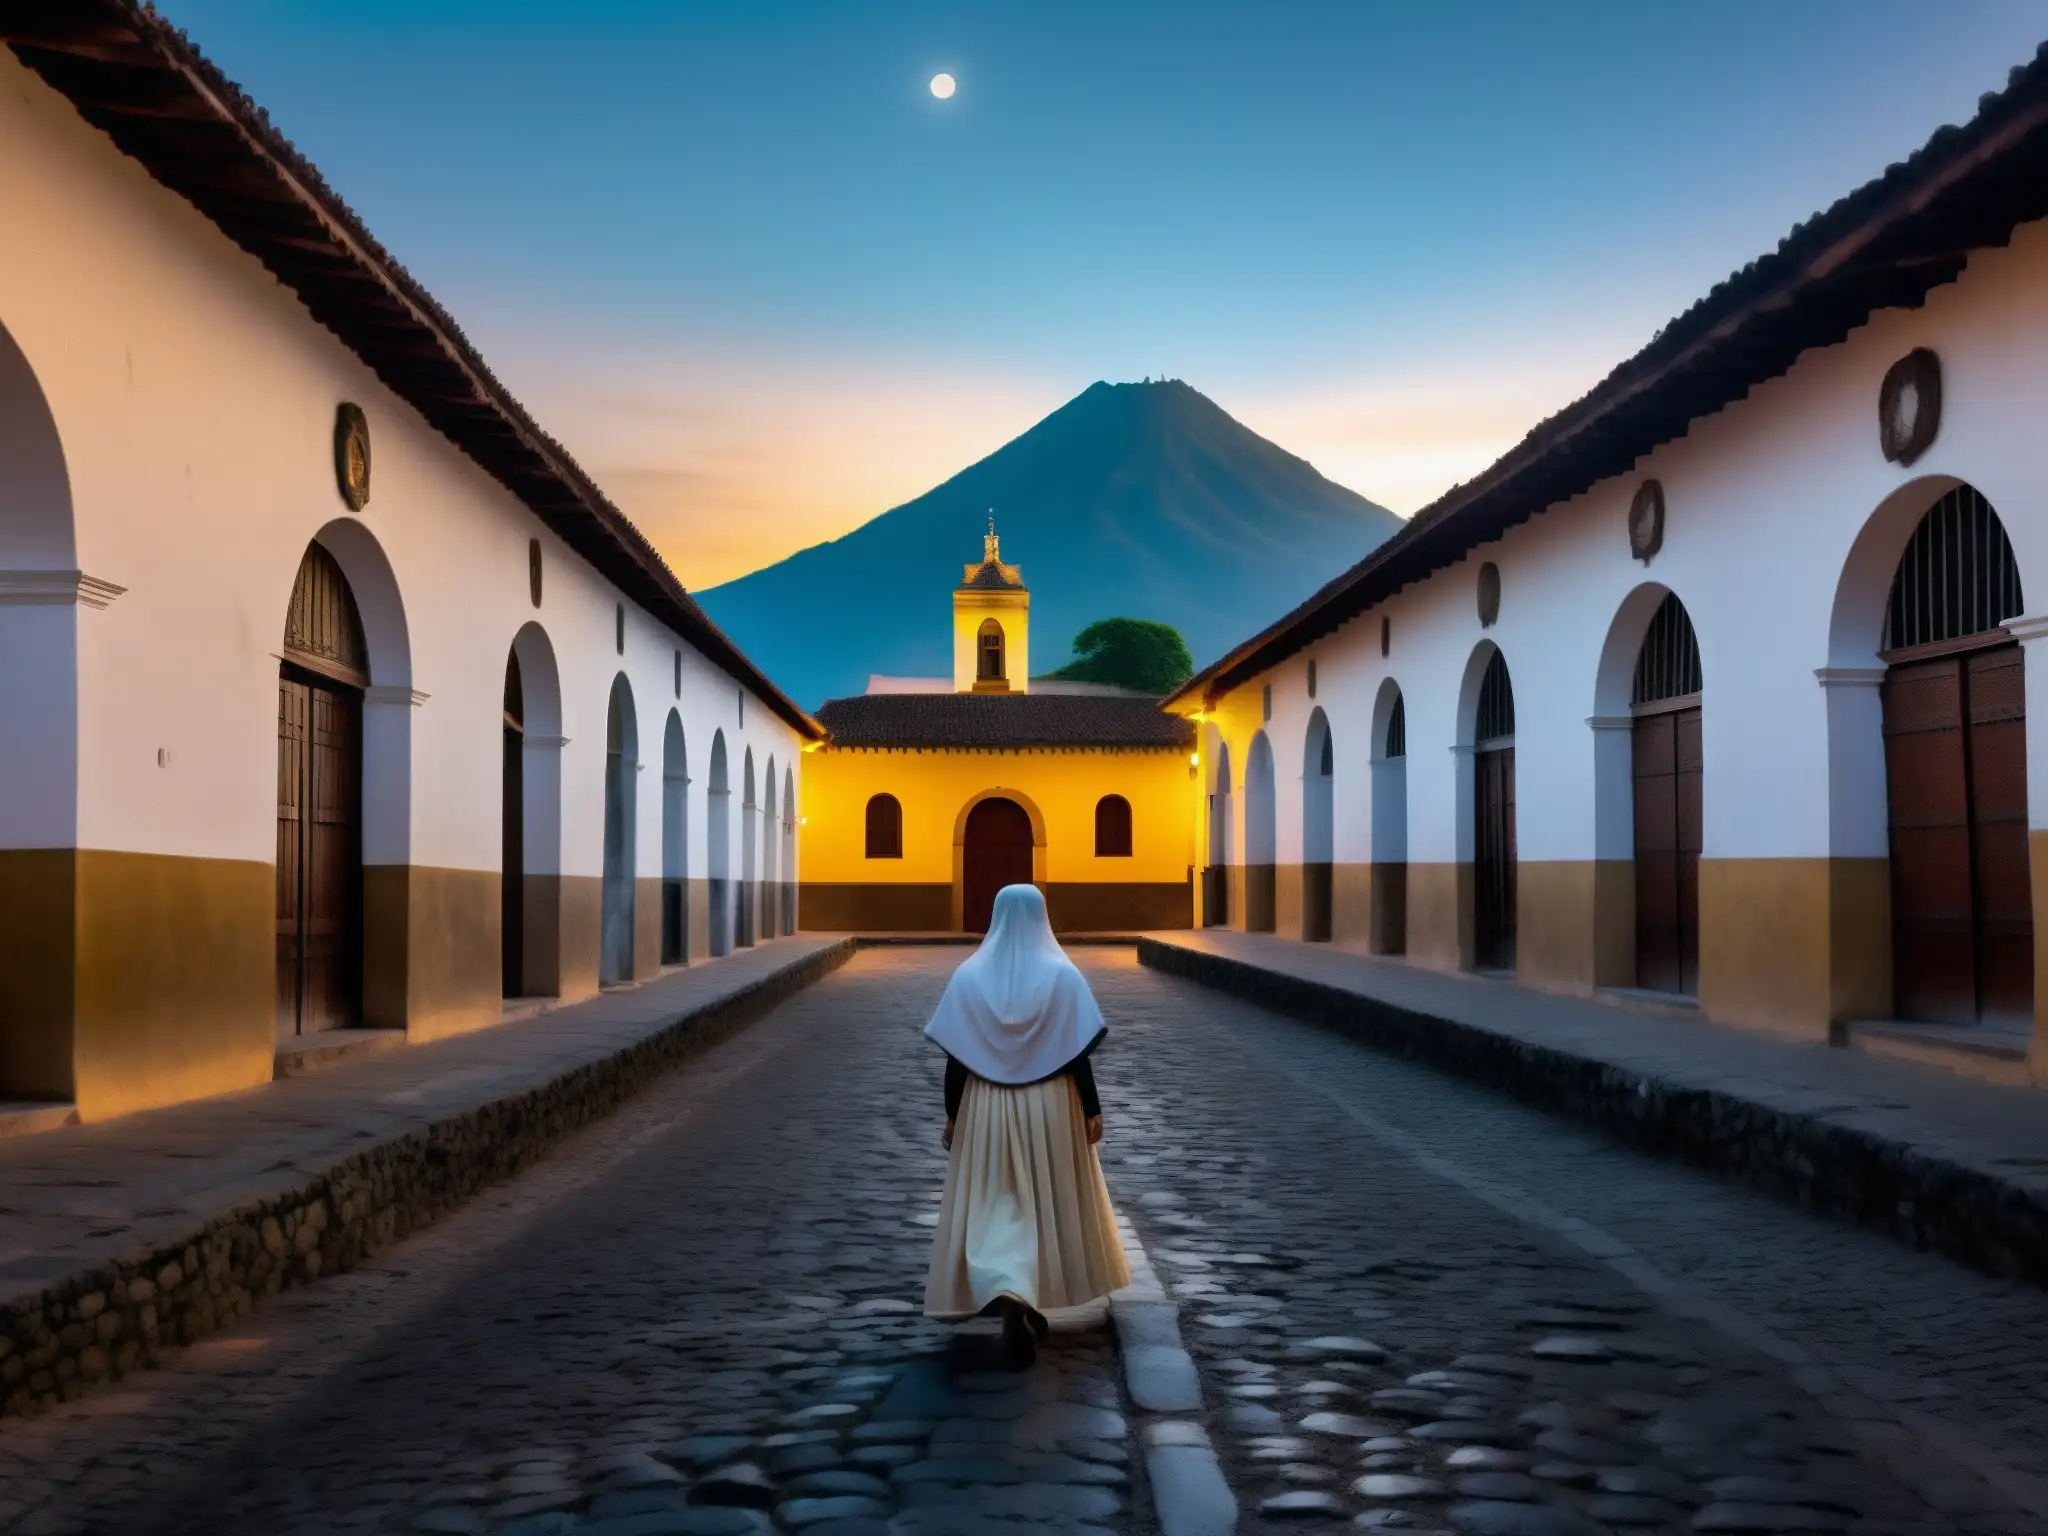 La misteriosa Monja Blanca de Antigua Guatemala camina entre ruinas, evocando la leyenda en una noche etérea y misteriosa